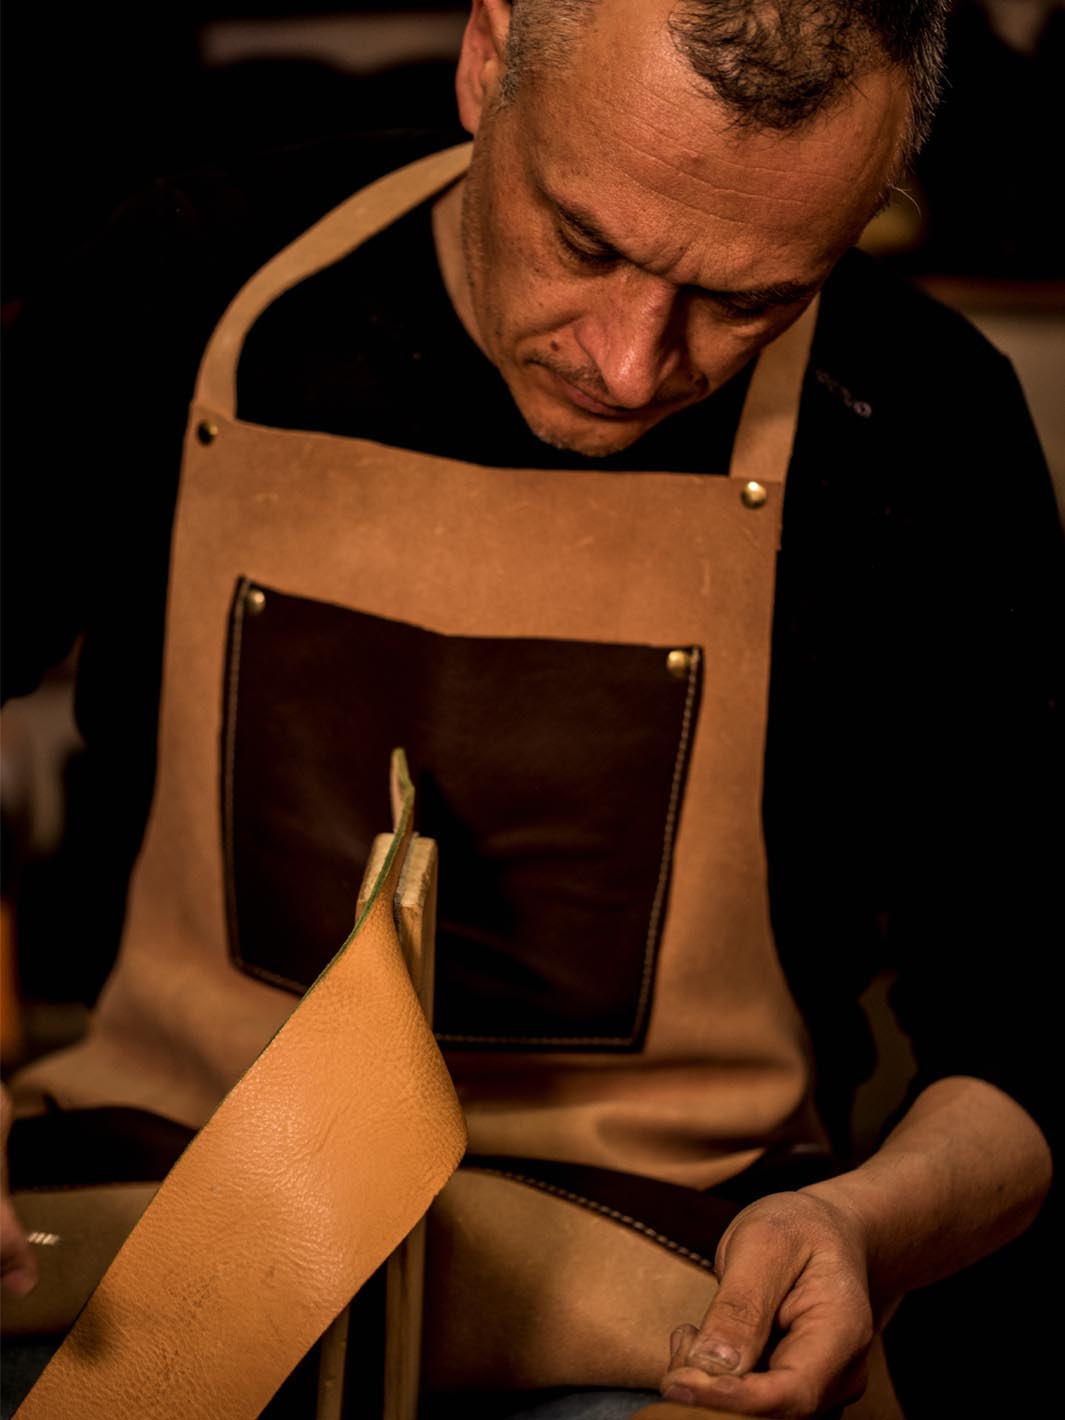 artigiano Massimiliano cuce a mano un pezzo di cuoio 